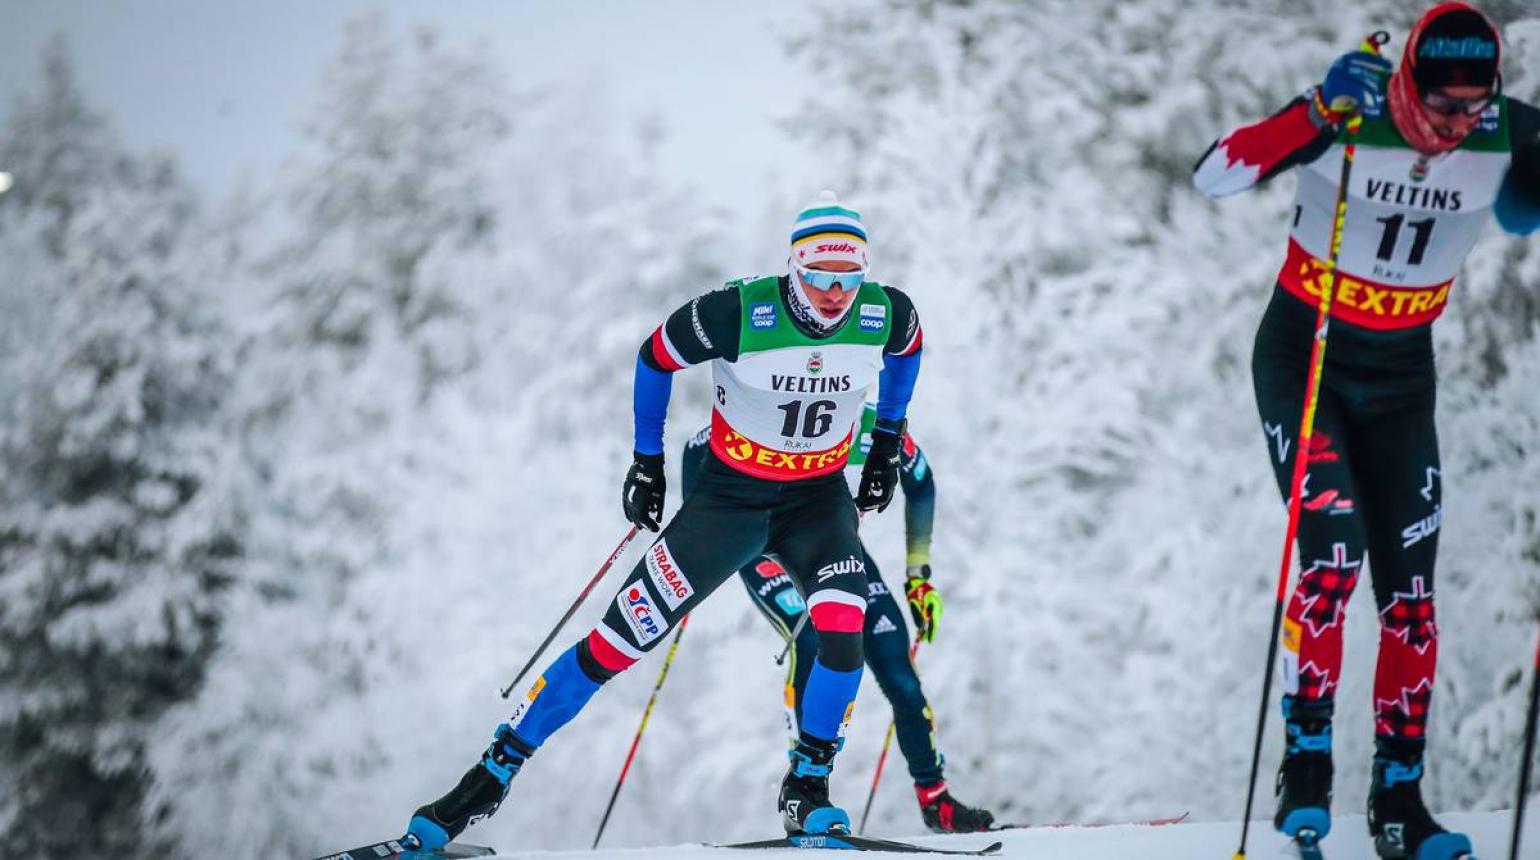 Senzace! Běžec na lyžích Michal Novák vybojoval na Světovém poháru v Ruce 5. místo!